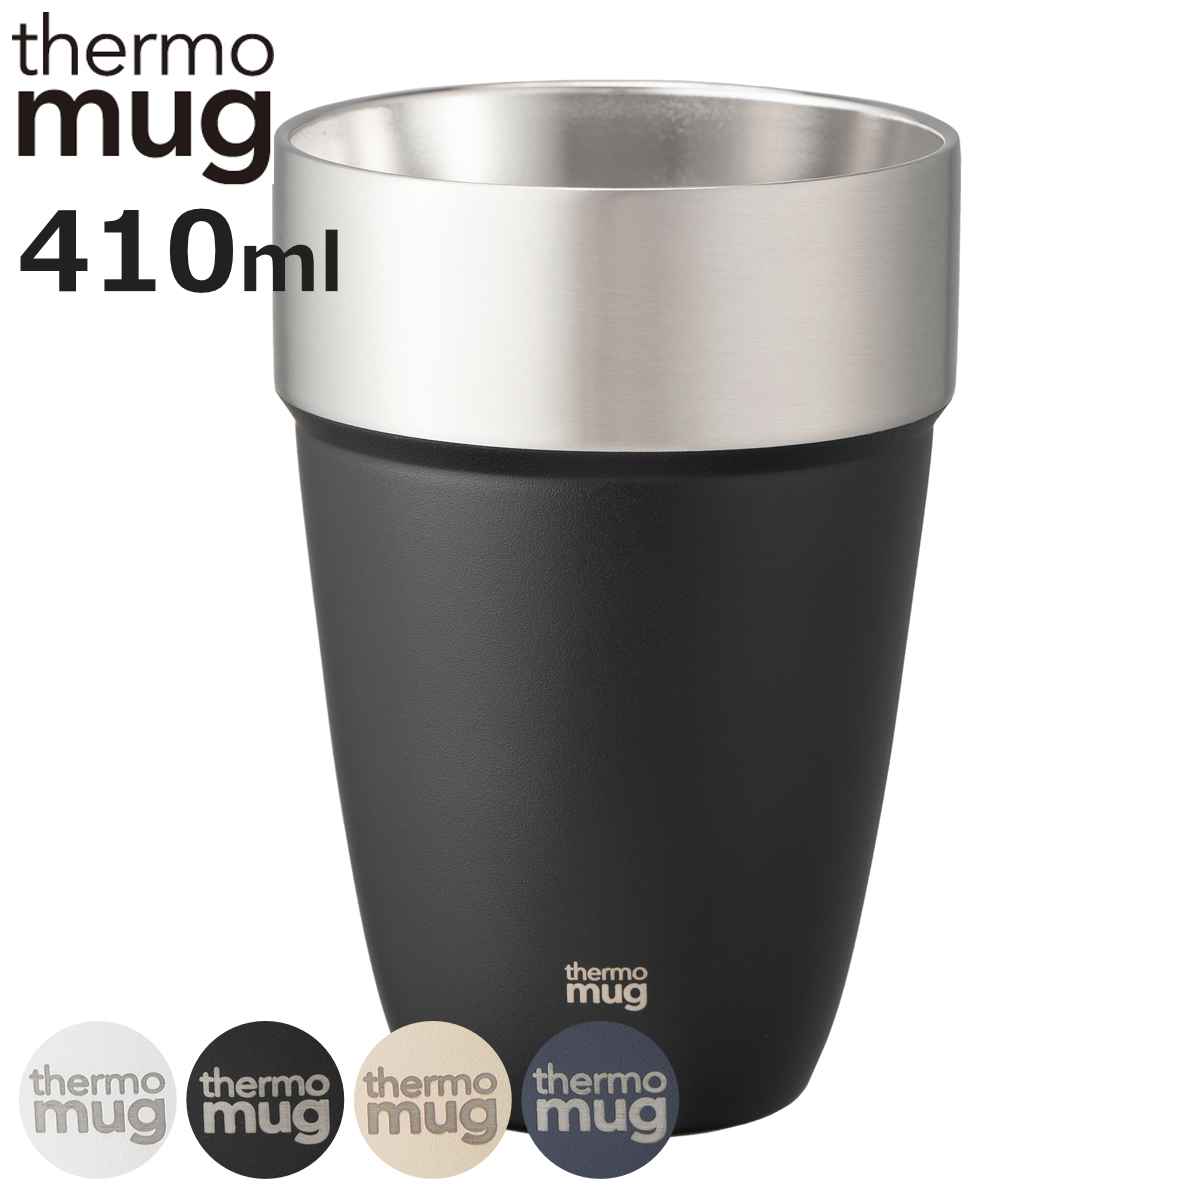 タンブラー 410ml thermo mug スタッキングタンブラー ステンレス （ 食洗機対応 ステンレスタンブラー コップ カップ 保冷 保温 積み重